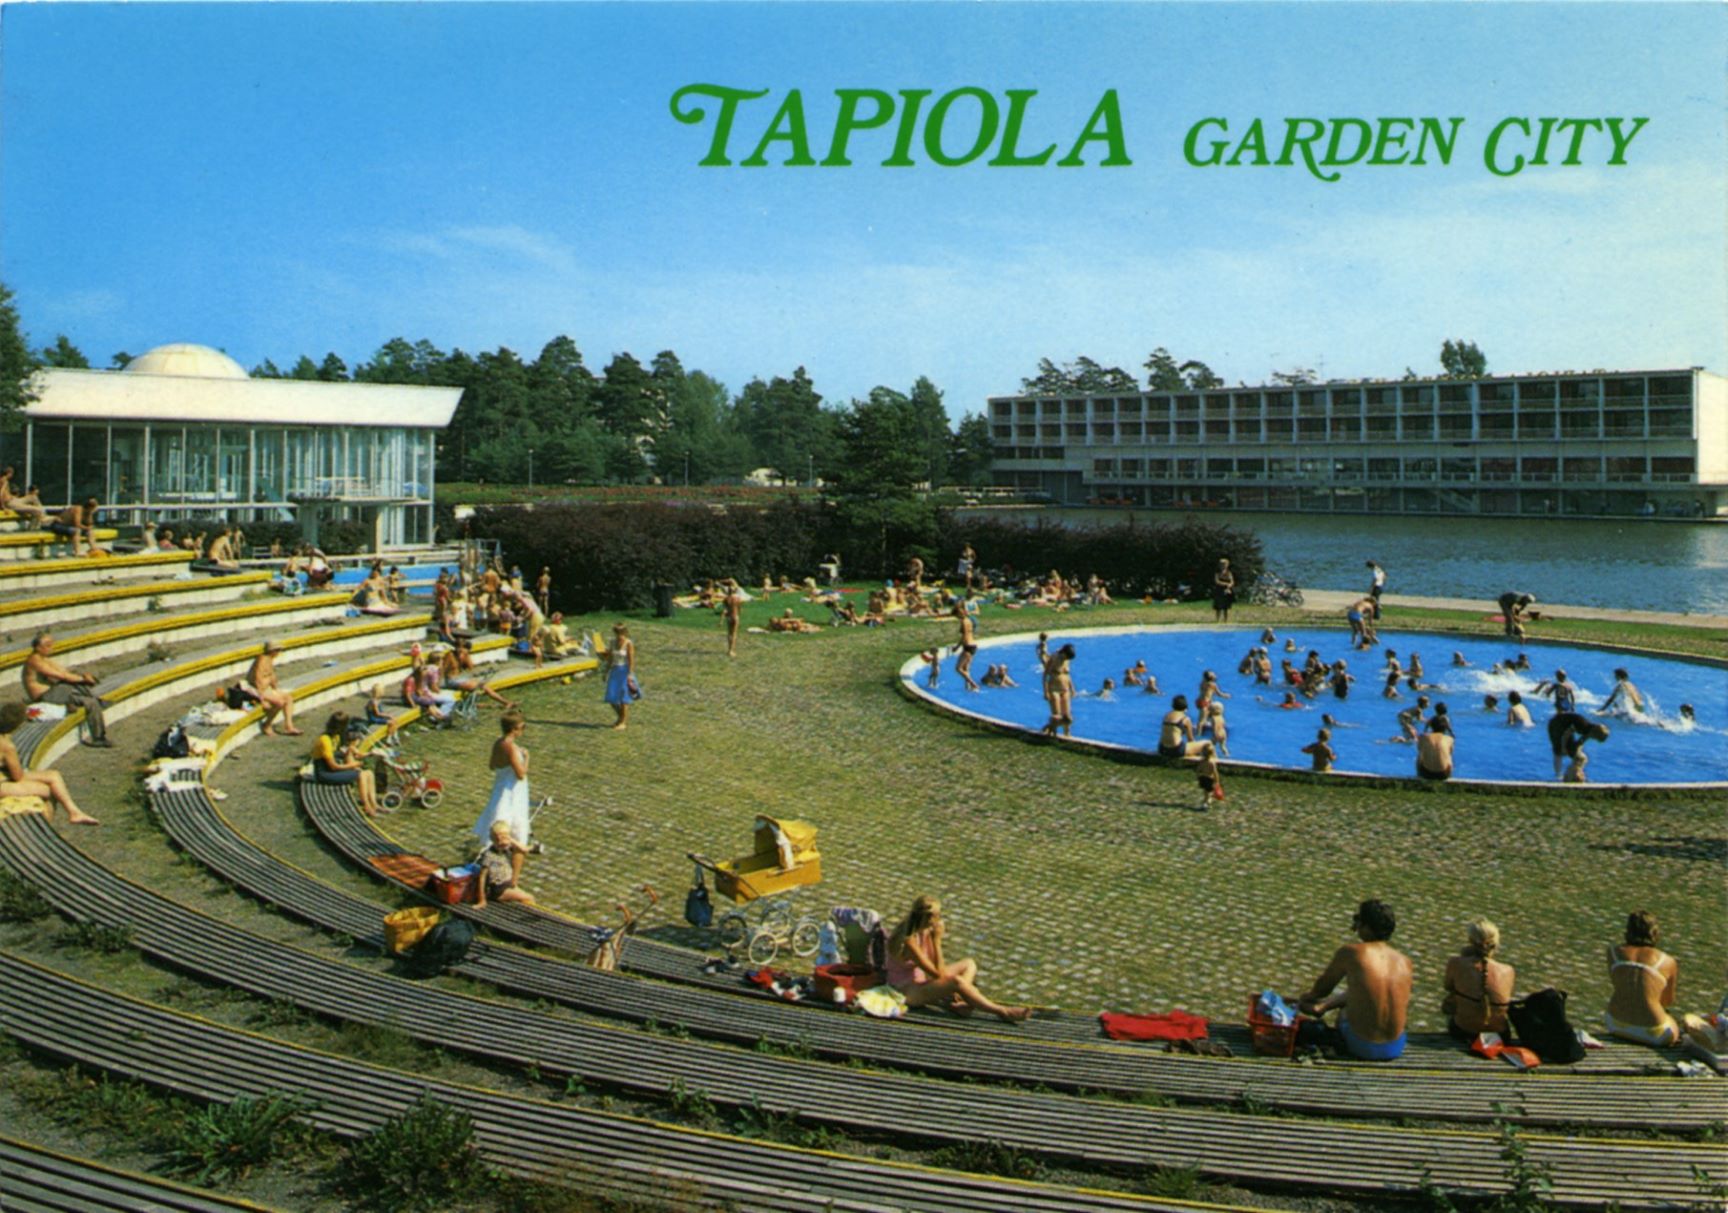 Postikortti, jossa esitellään Tapiolan puutarhakaupunkia.